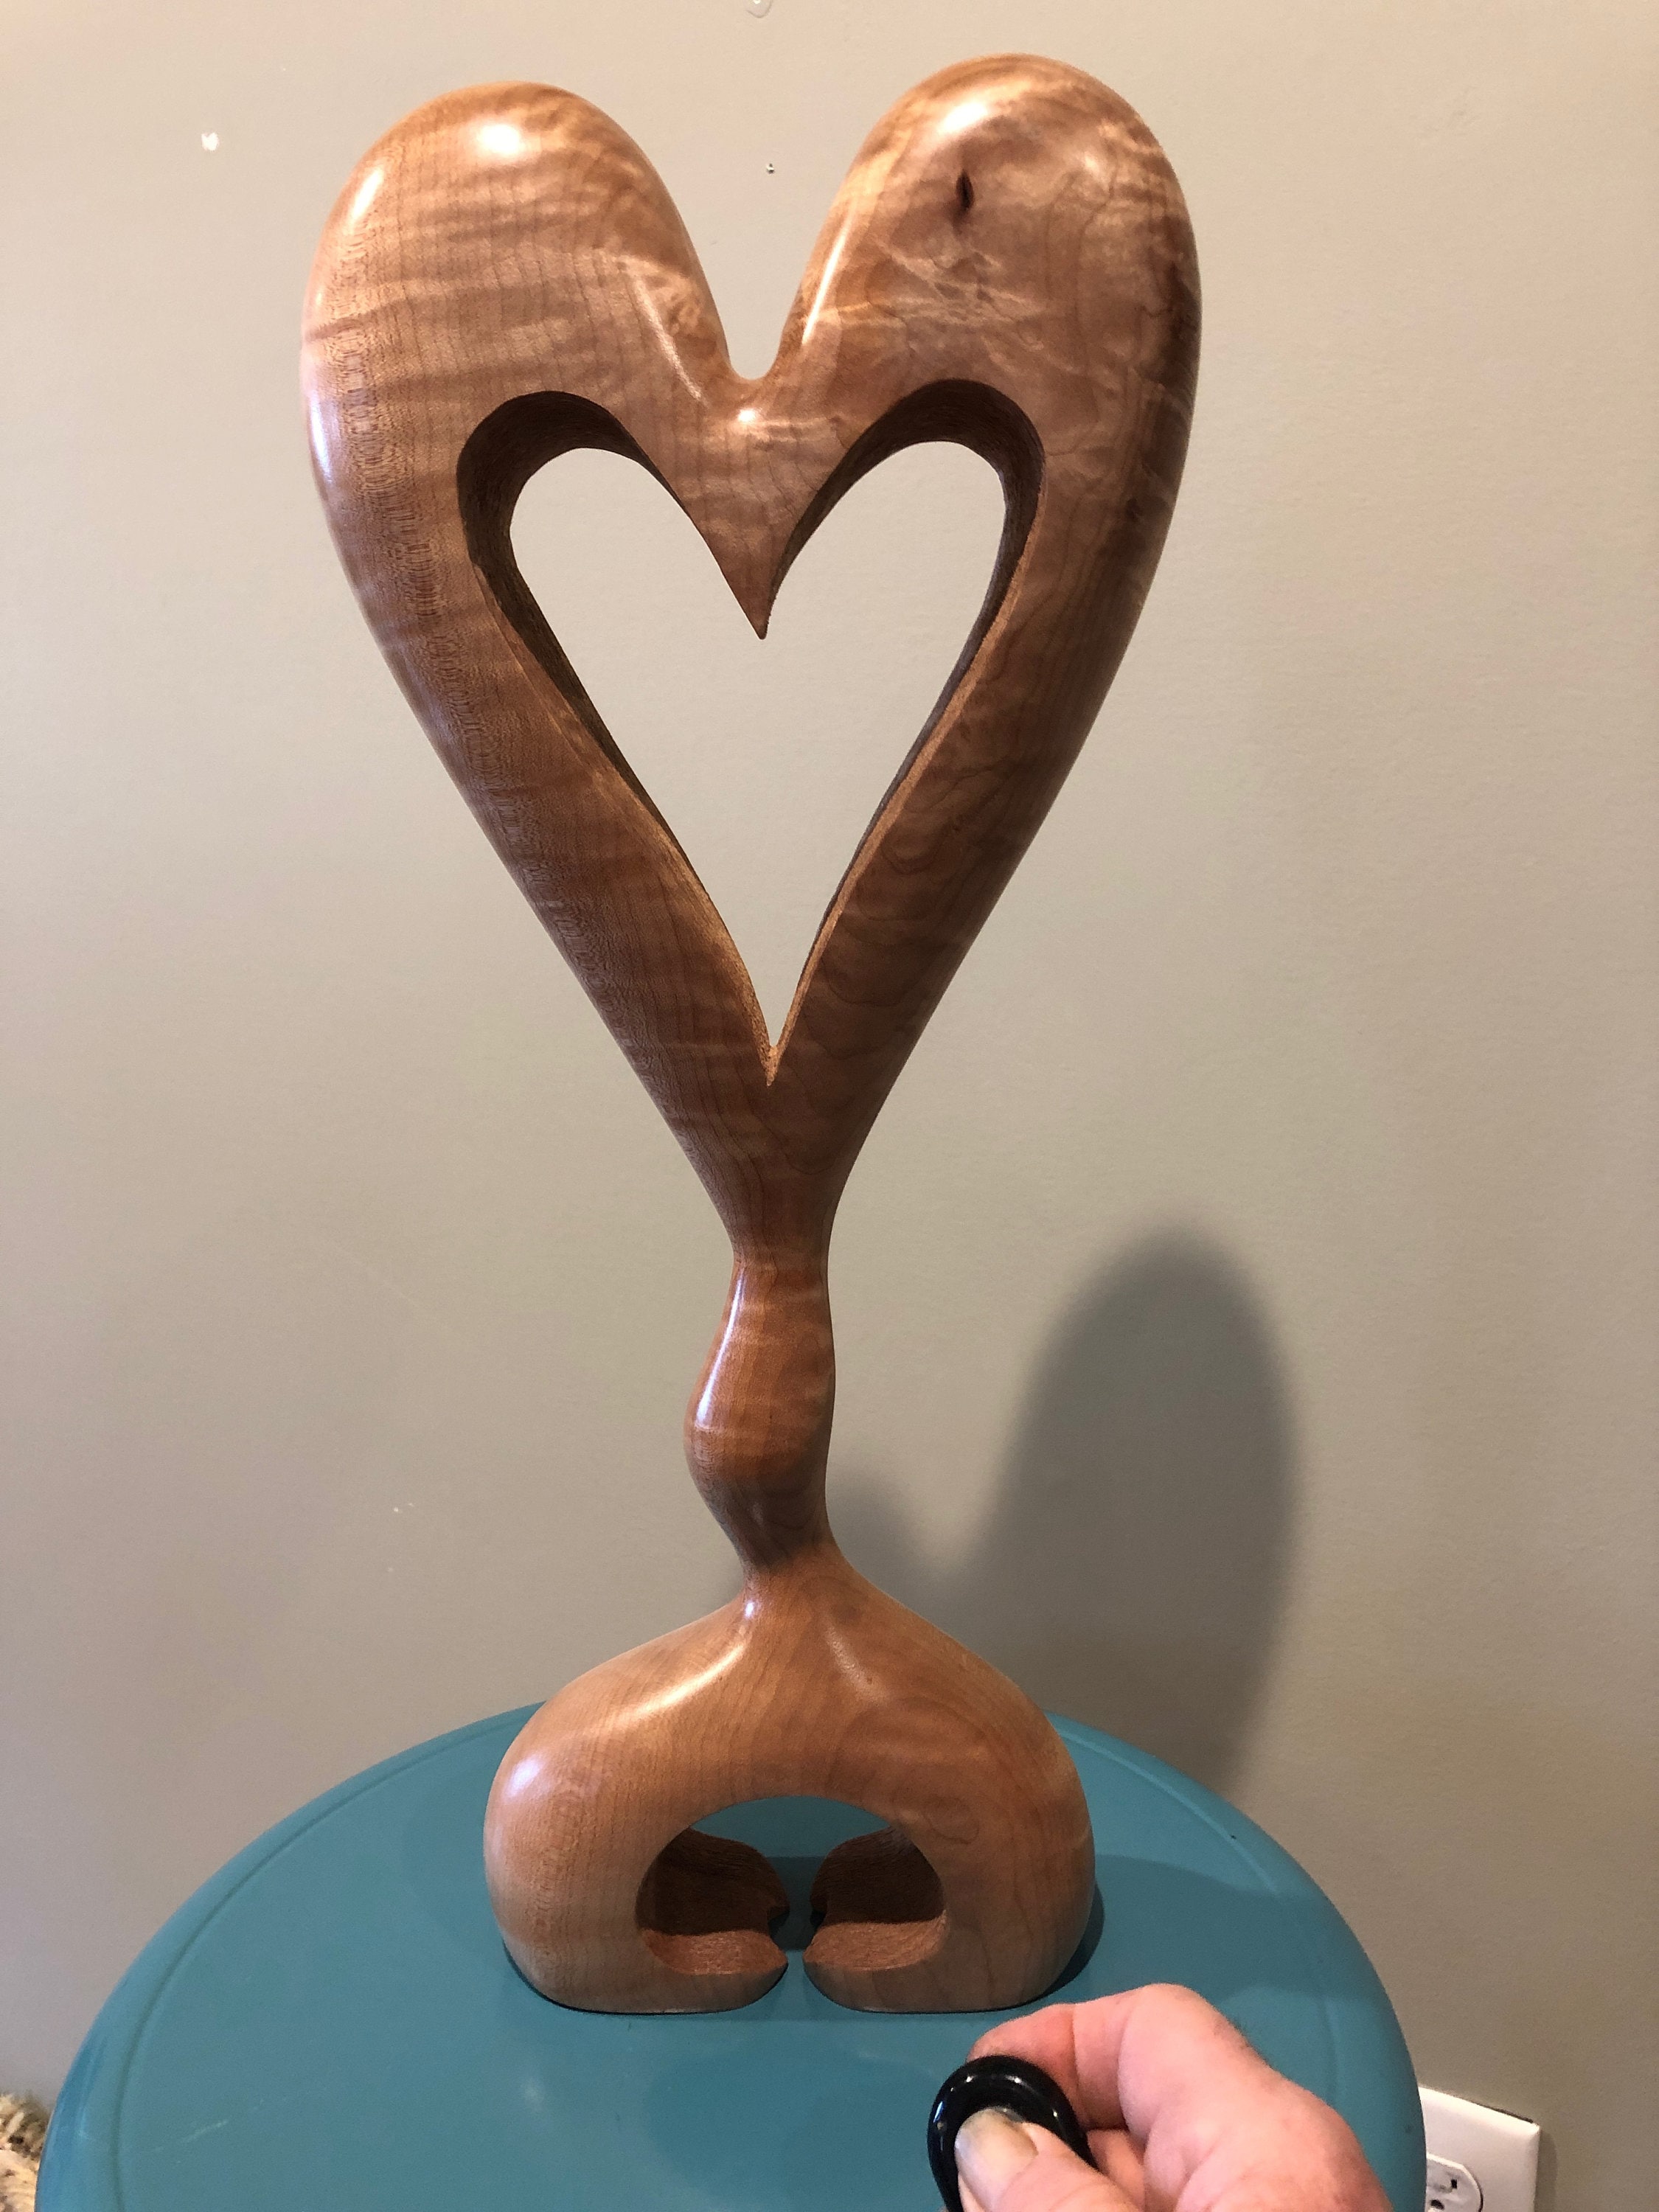 Heart wooden heart standing art wood carving love Sculpture